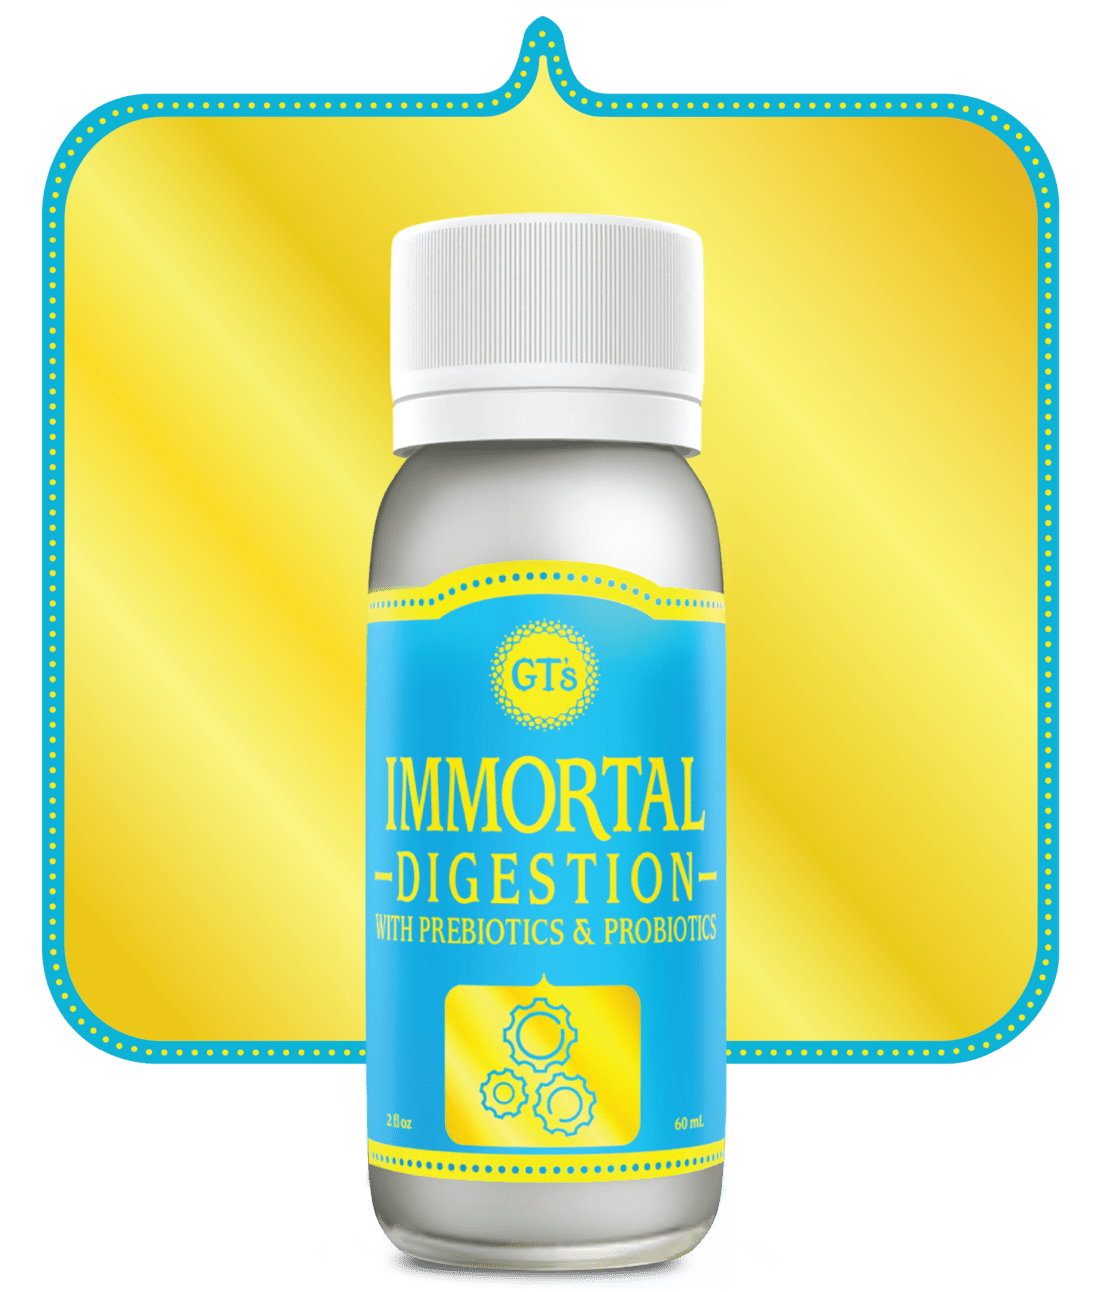 GT's IMMORTAL Digestion Bottle Render